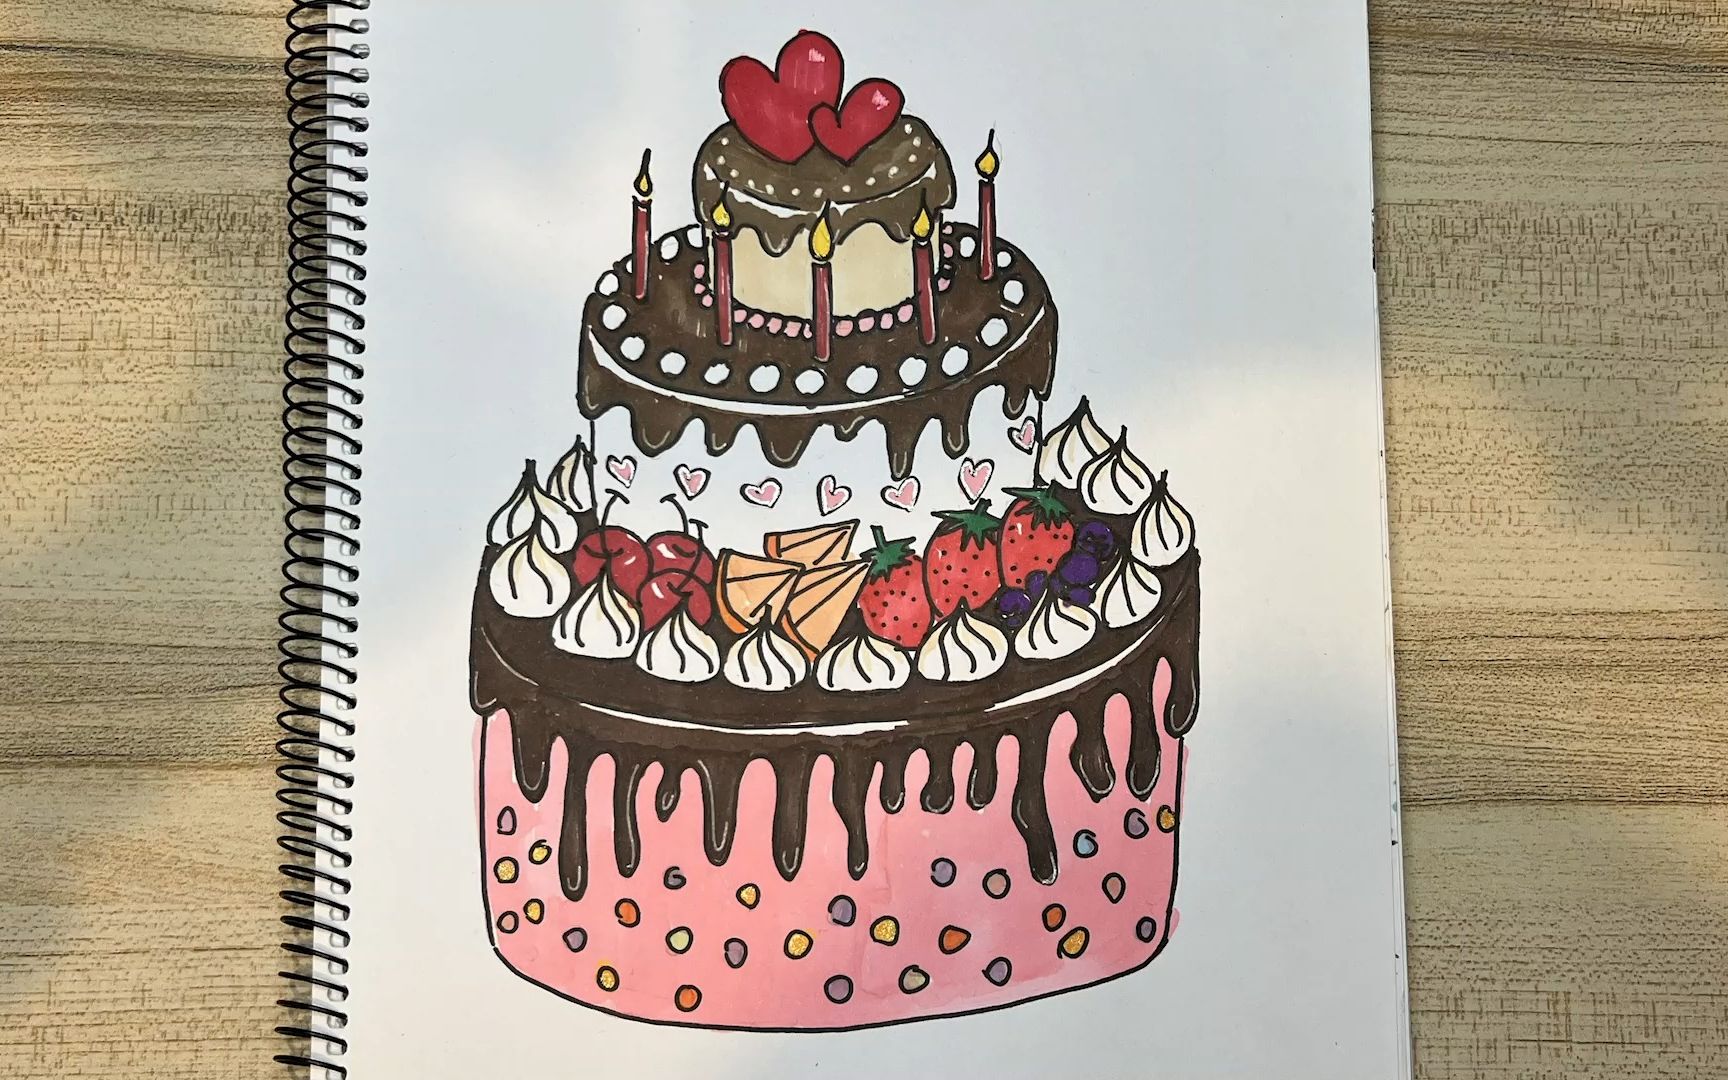 蛋糕怎么画,生日蛋糕怎么画,卡通生日蛋糕,奶油蛋糕怎么画